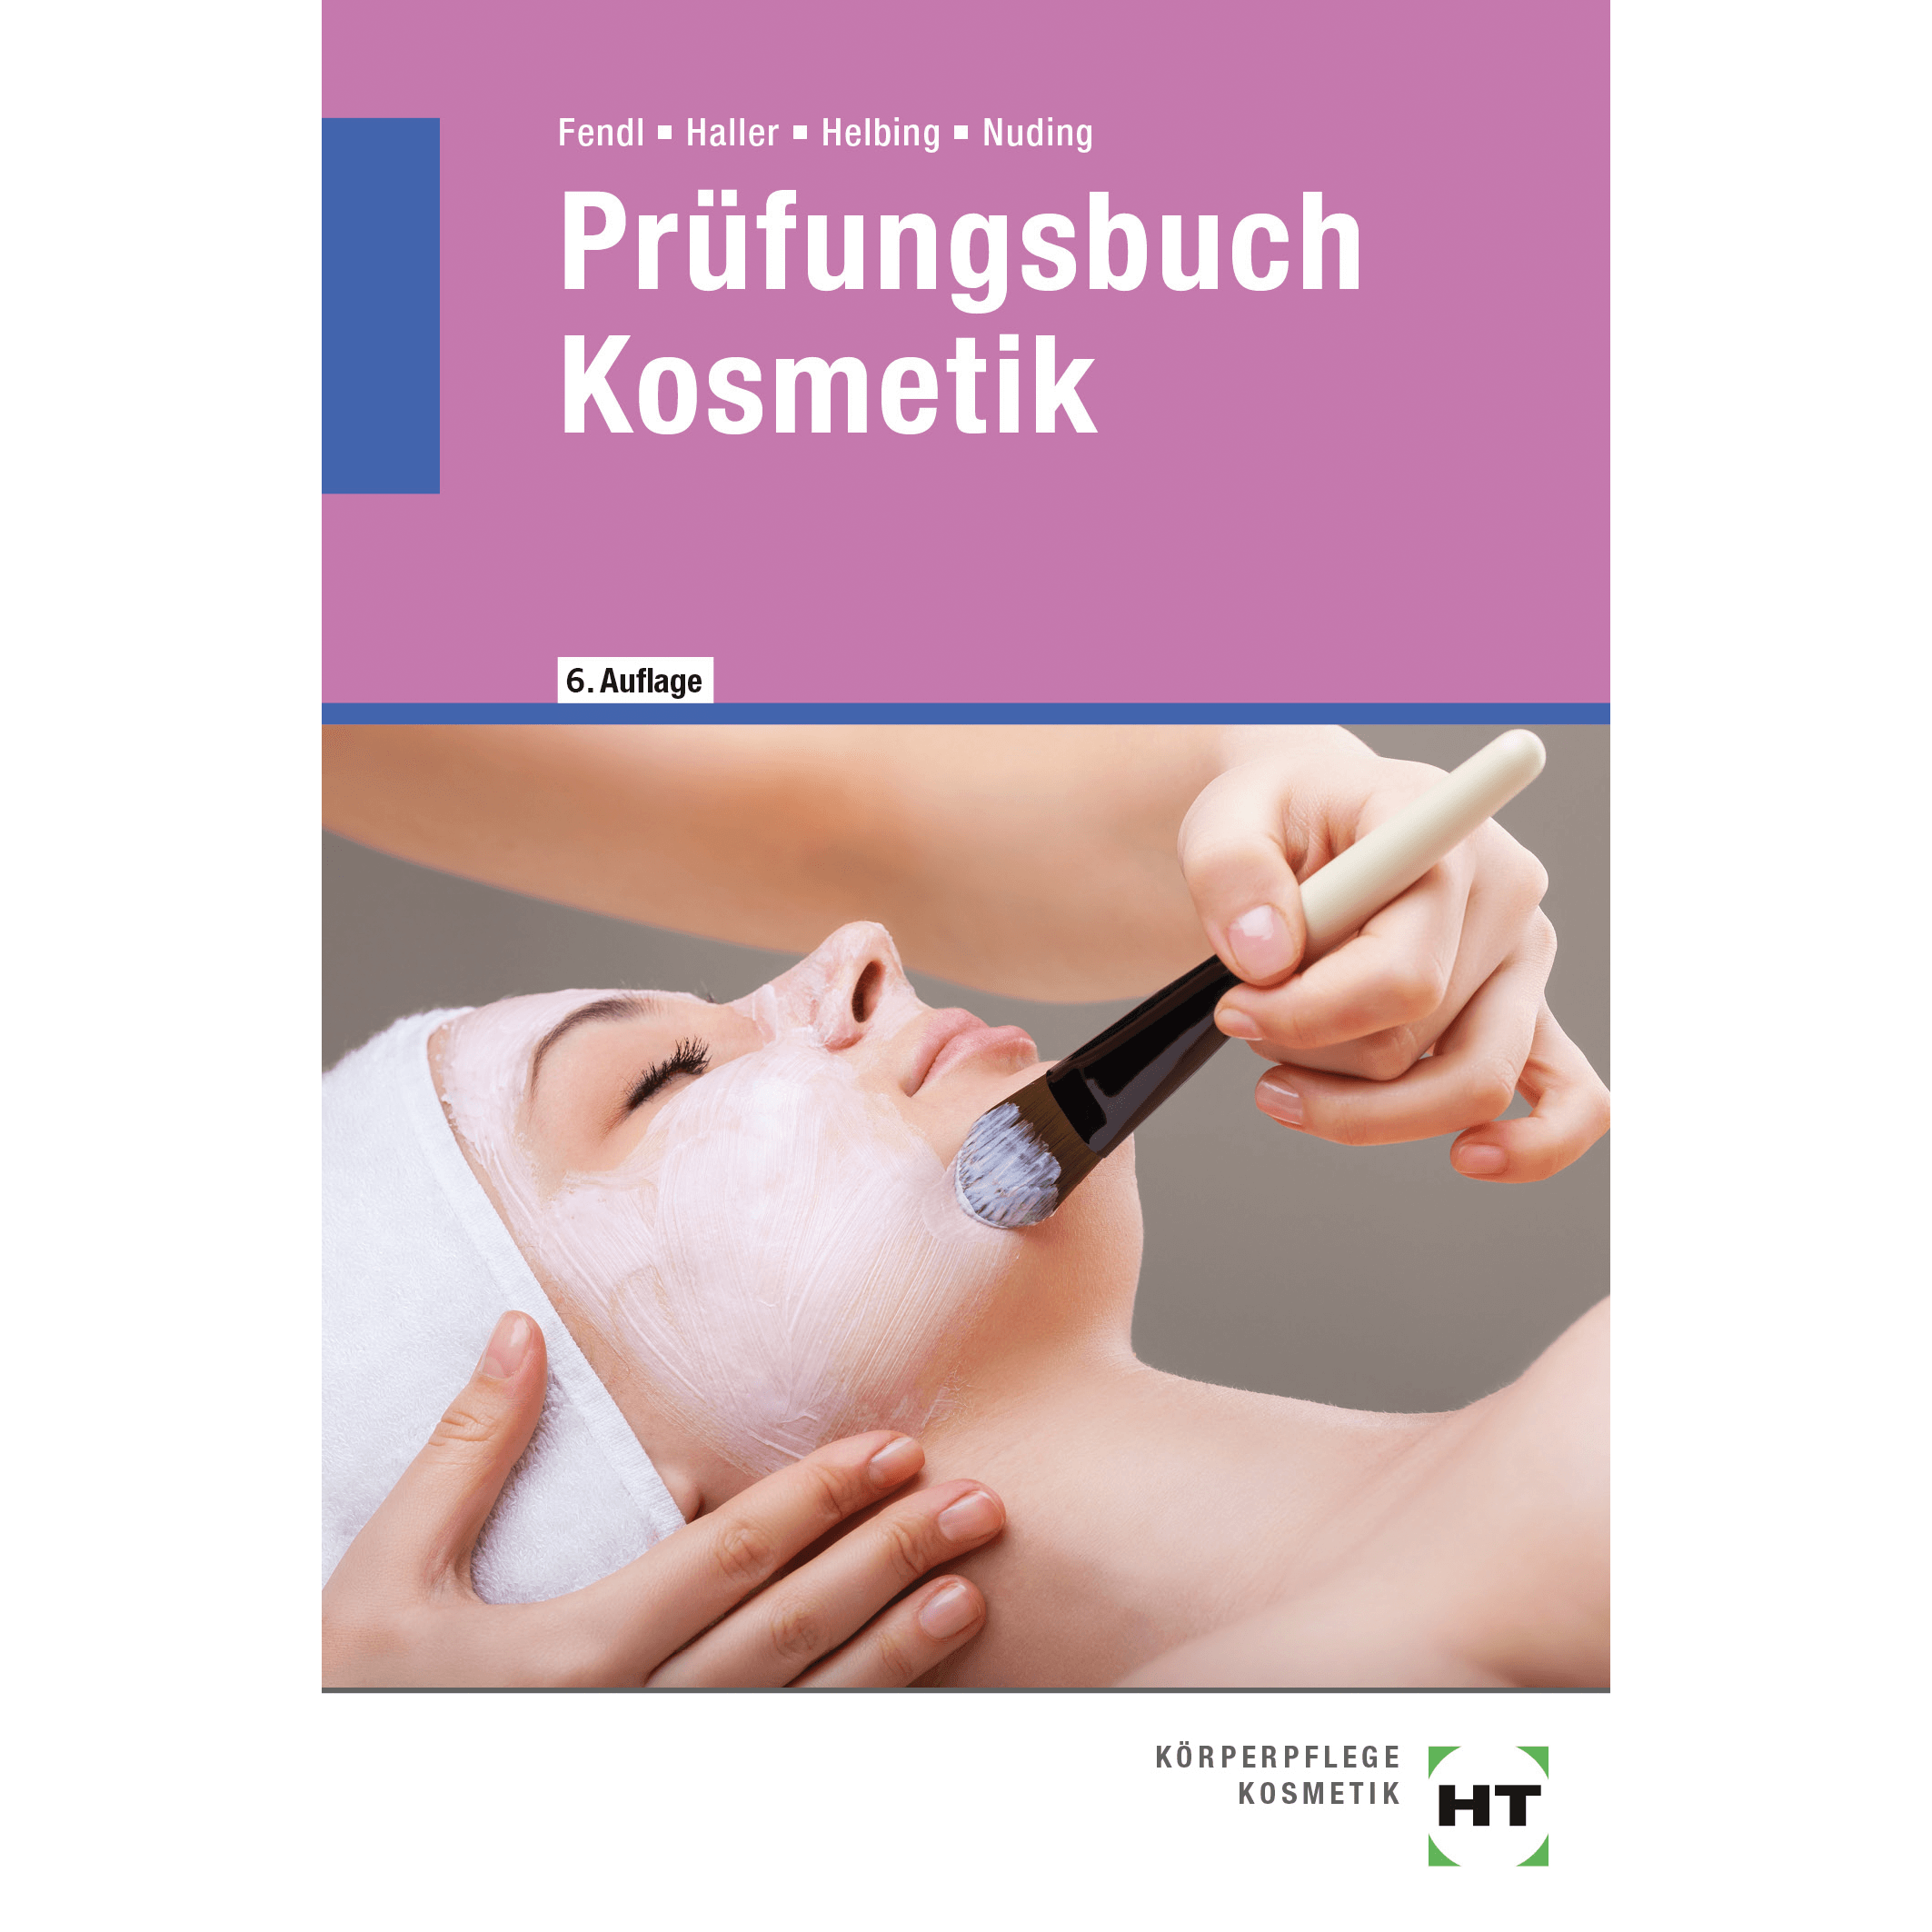 prufungsbuch-kosmetik_21186